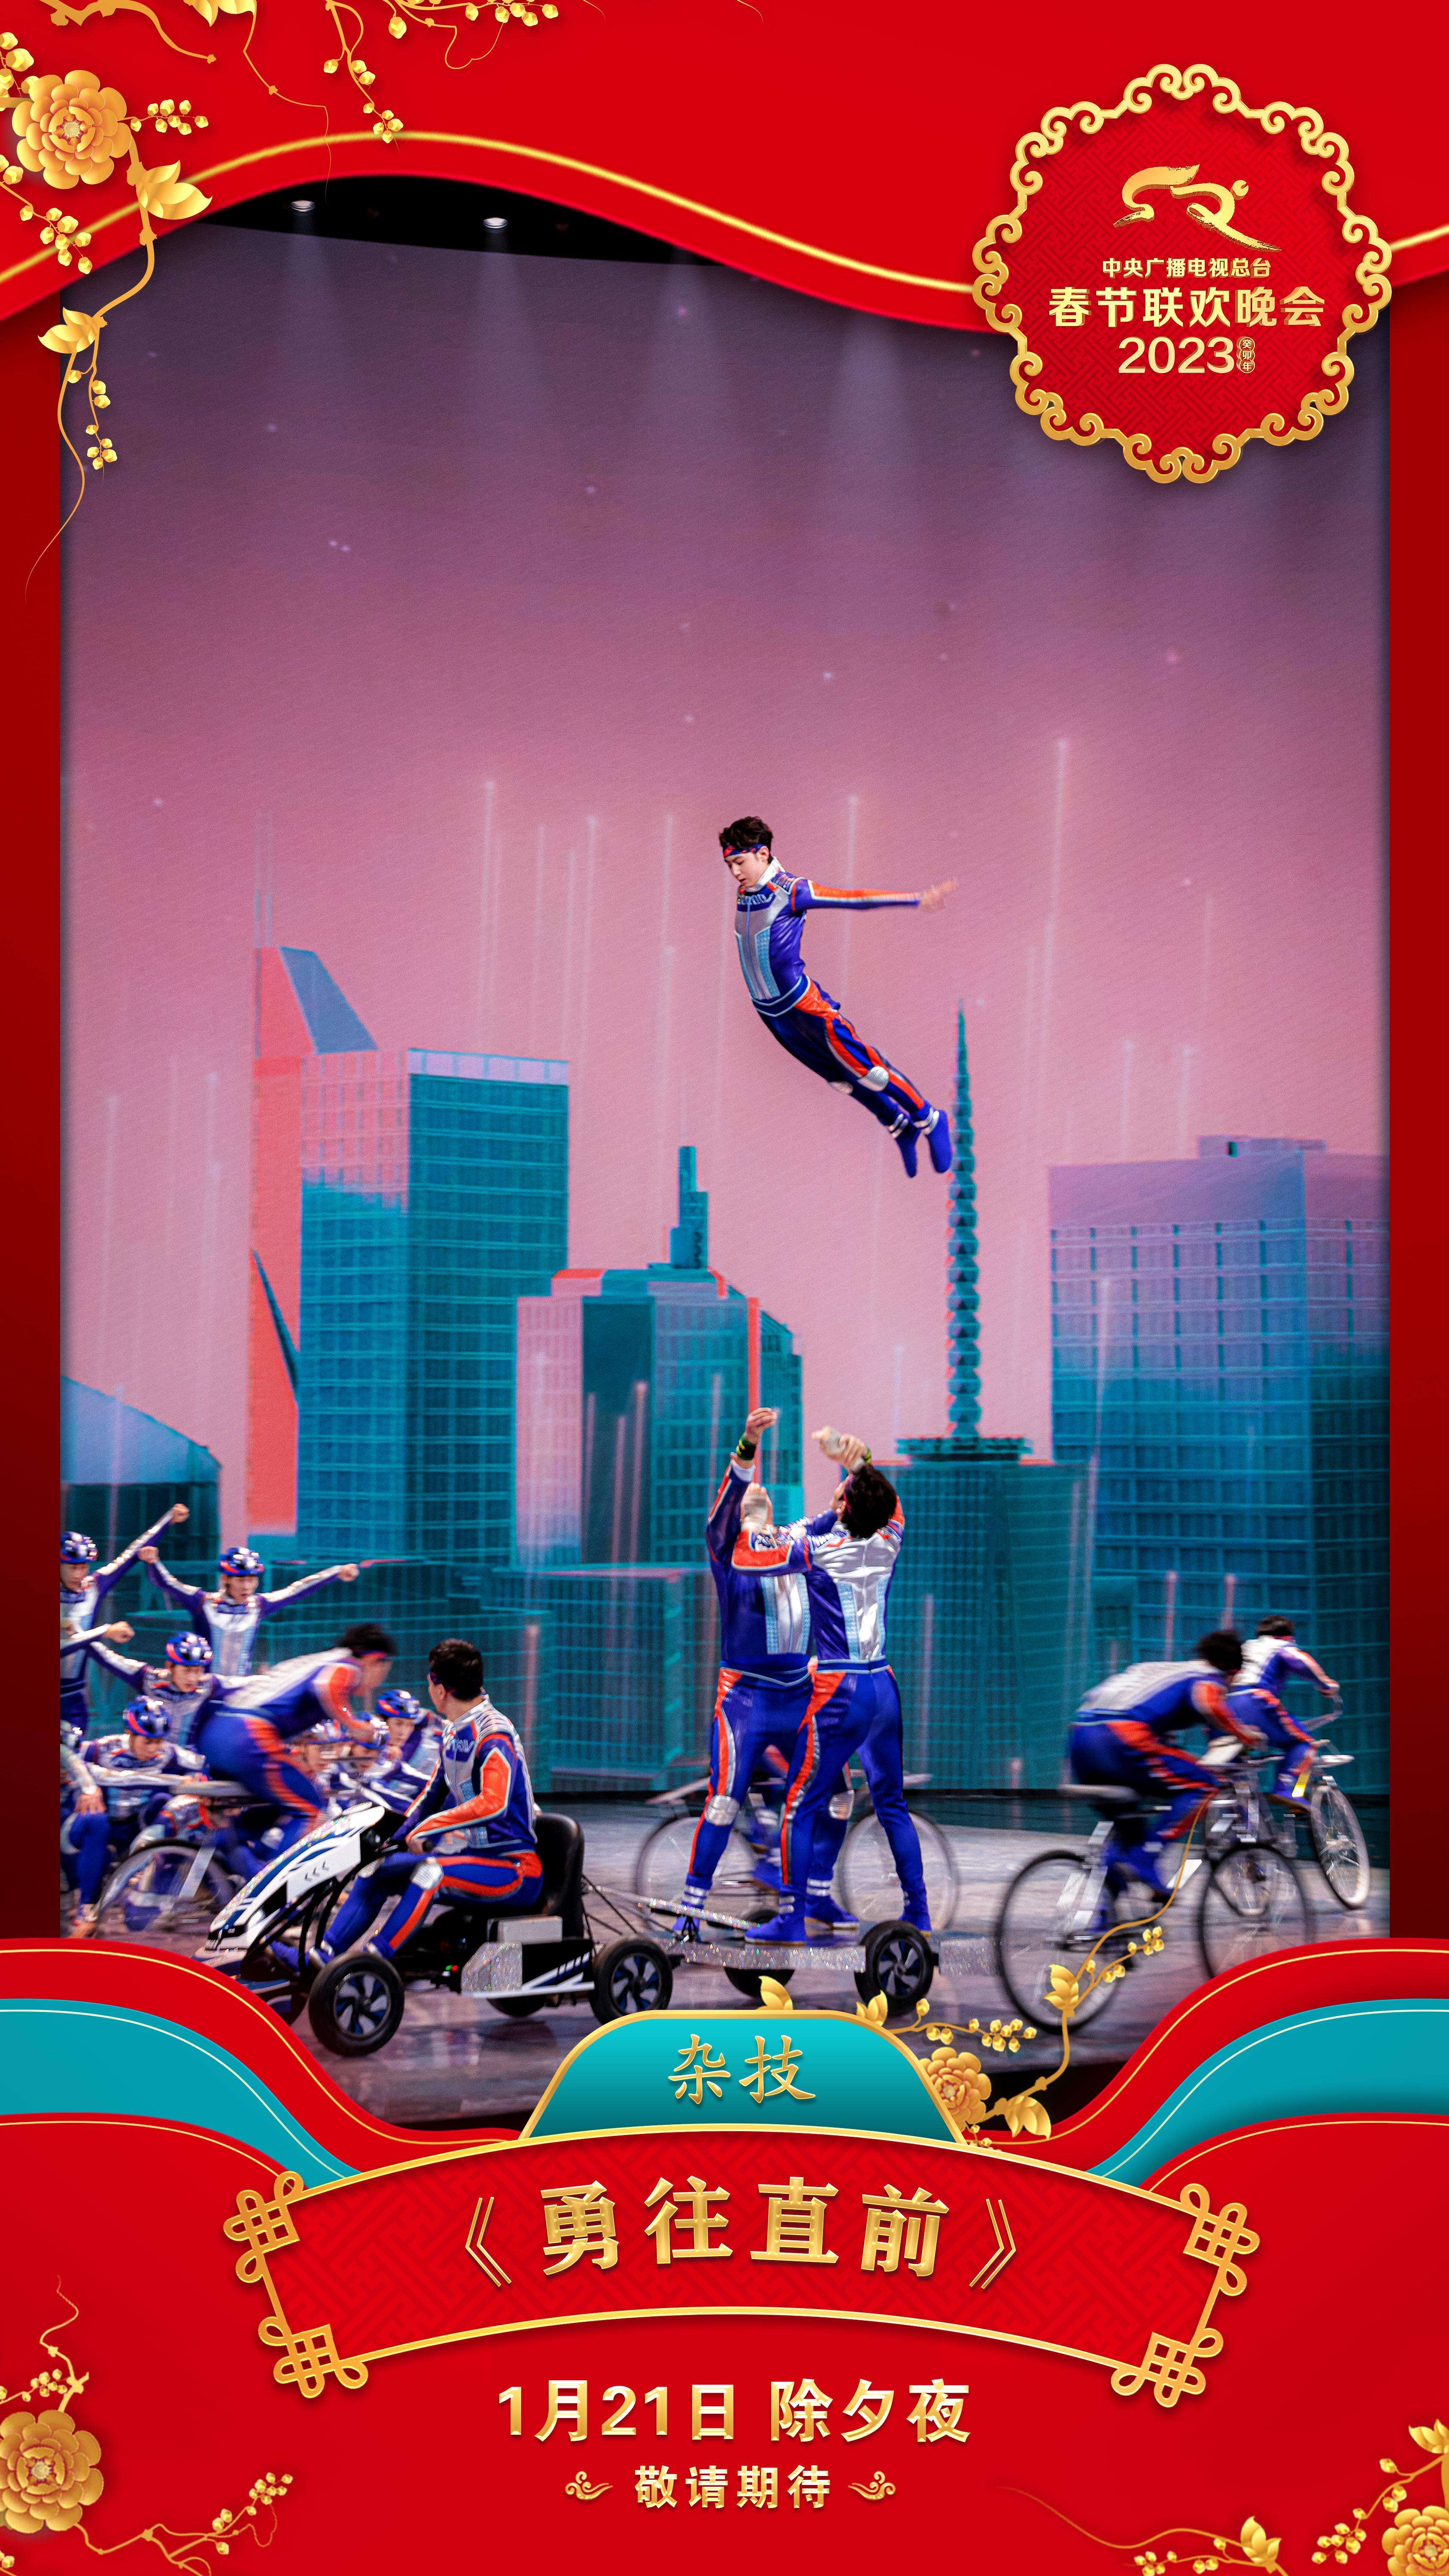 《2023年春节联欢晚会》第二组节目海报发布10.jpg